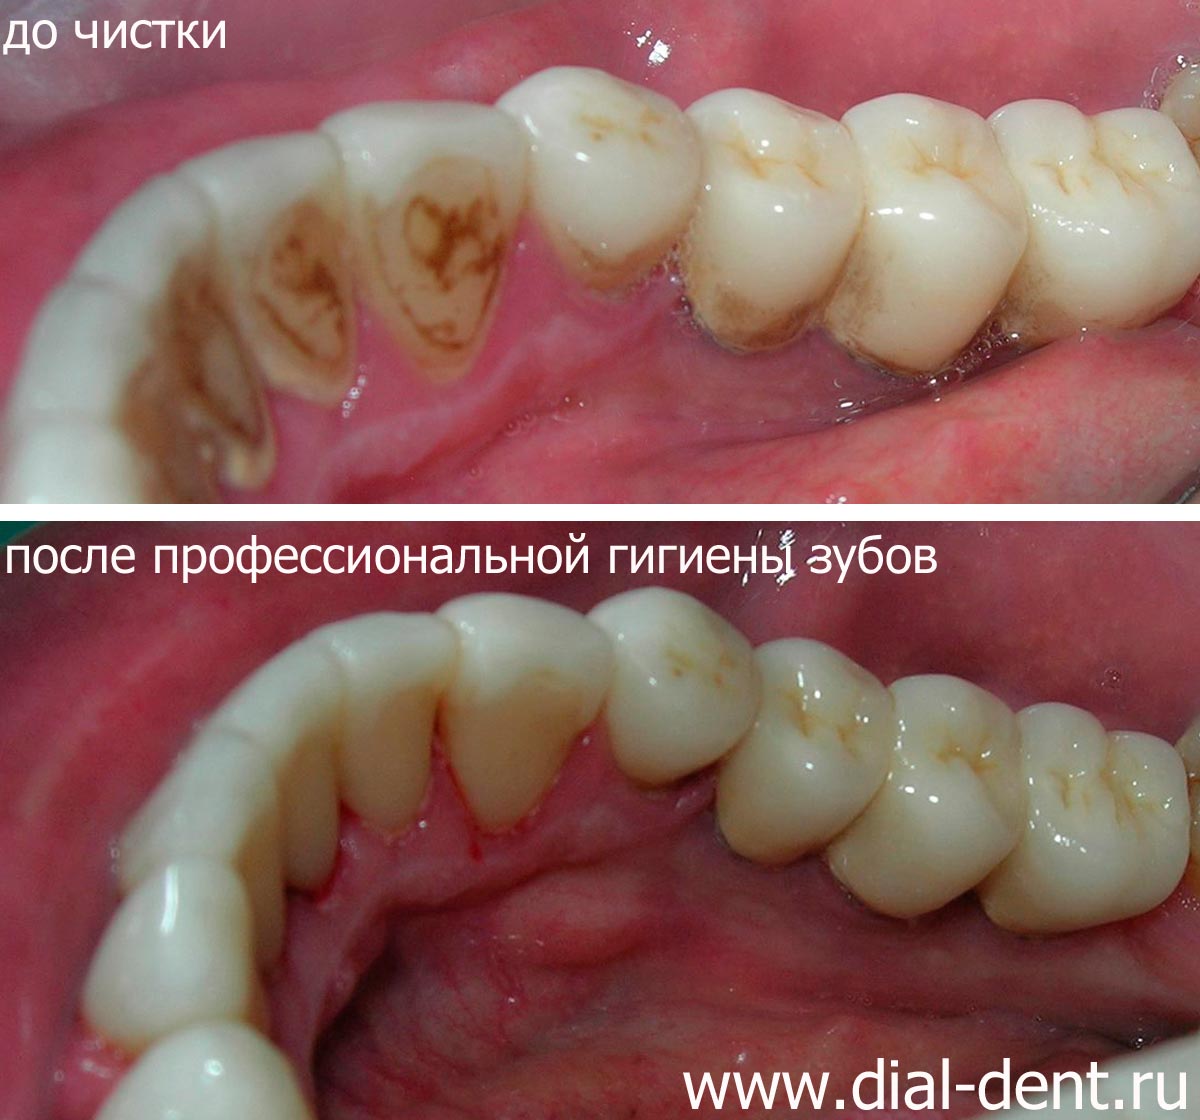 зубной налет и результат профессиональной гигиены зубов